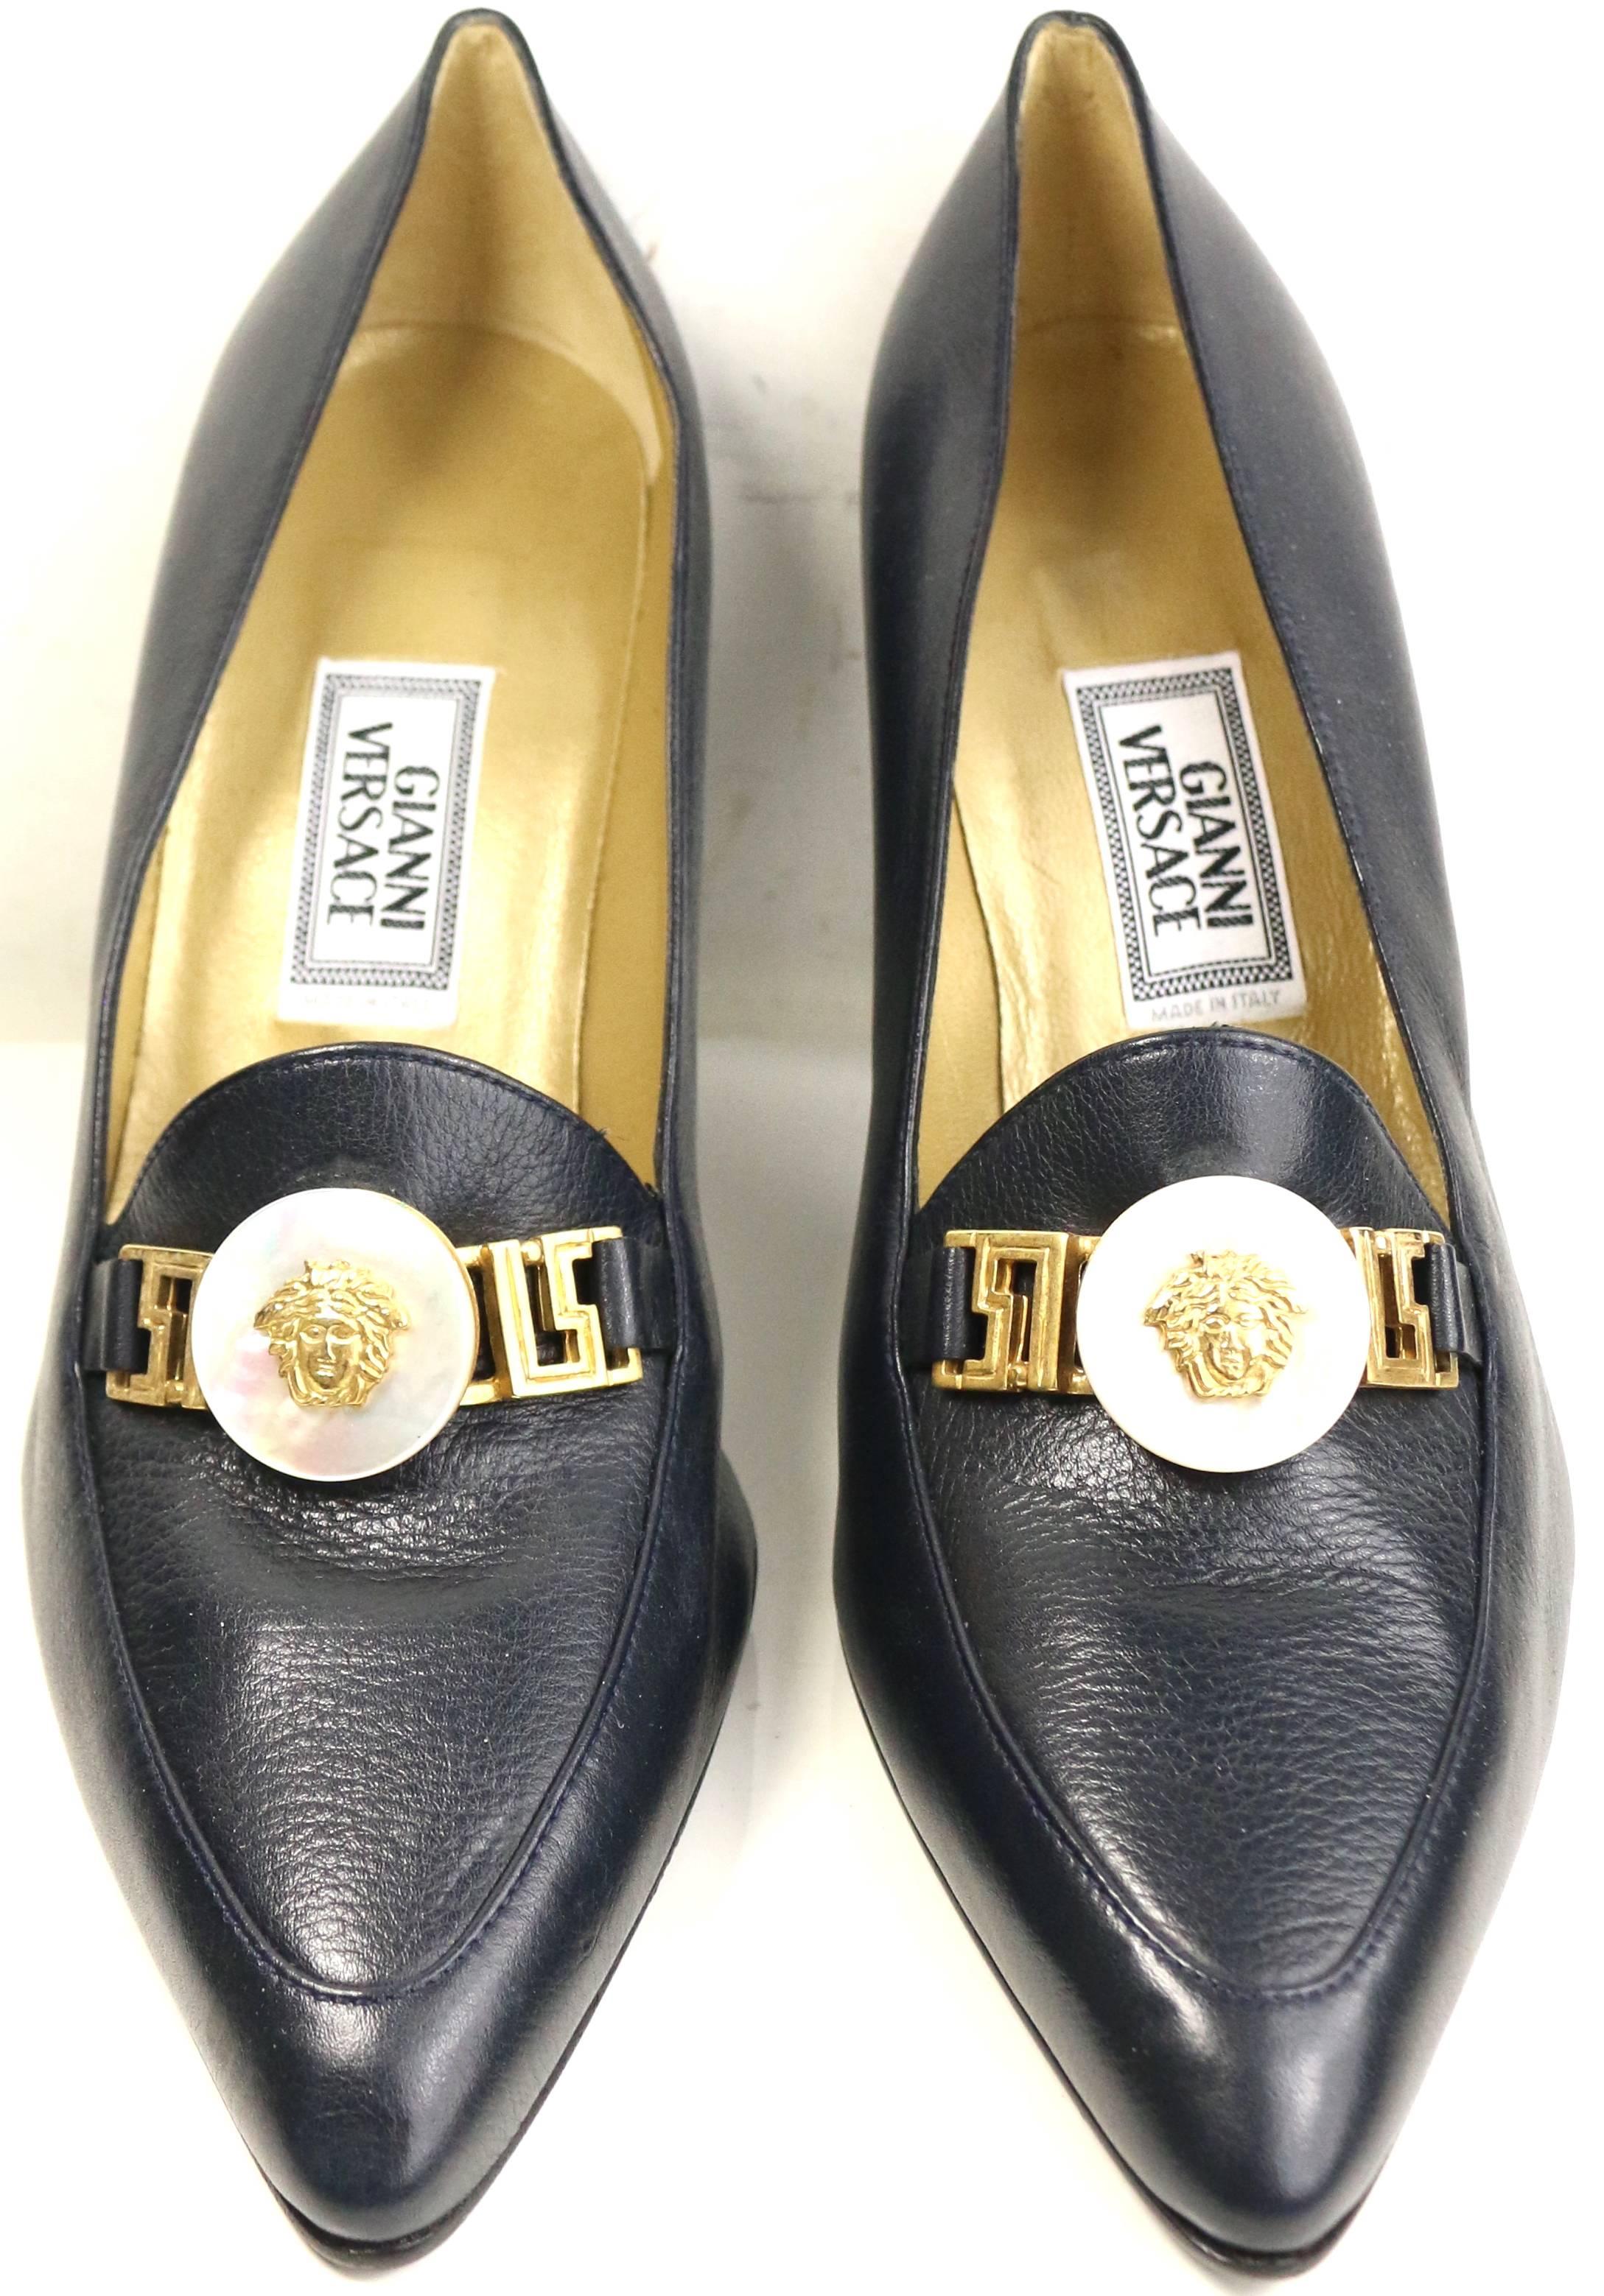 - Chaussures vintage des années 90 de Gianni Versace en cuir d'agneau marine foncé avec des talons 